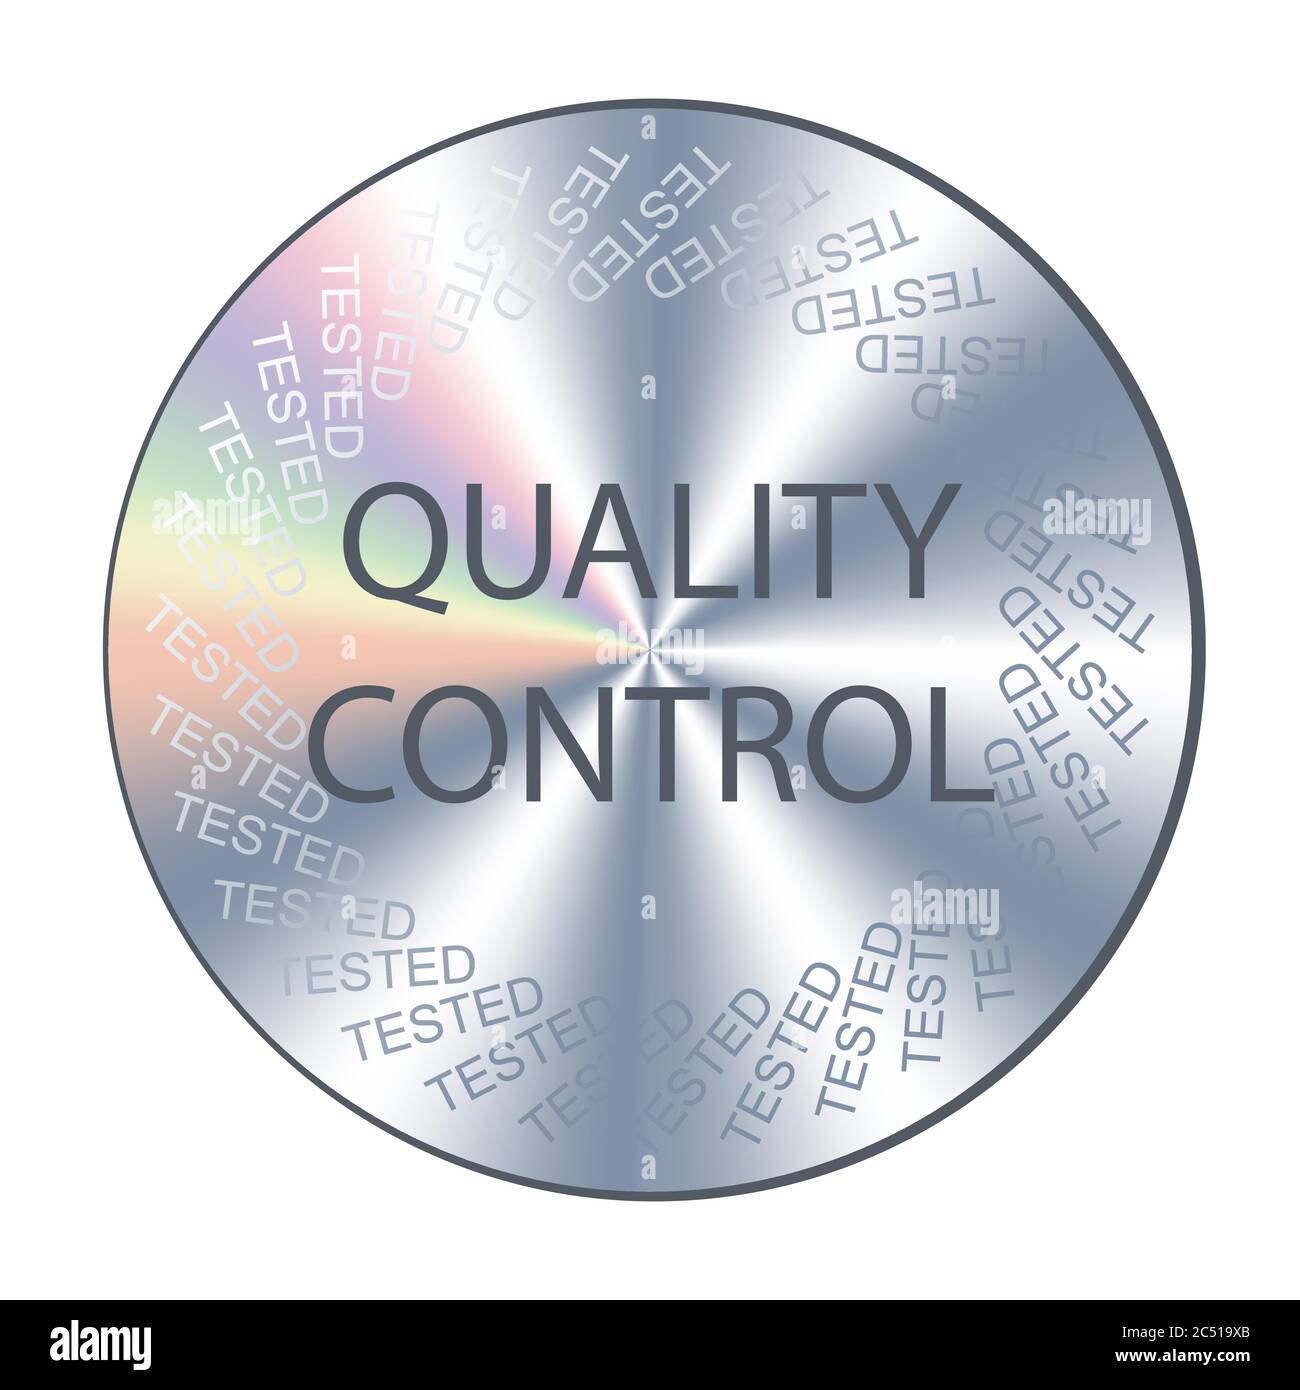 Qualitätskontrolle runder Hologramm-Aufkleber. Vektorabzeichen, Symbol, Zeichen für die Qualitätssicherung des Produkts Stock Vektor